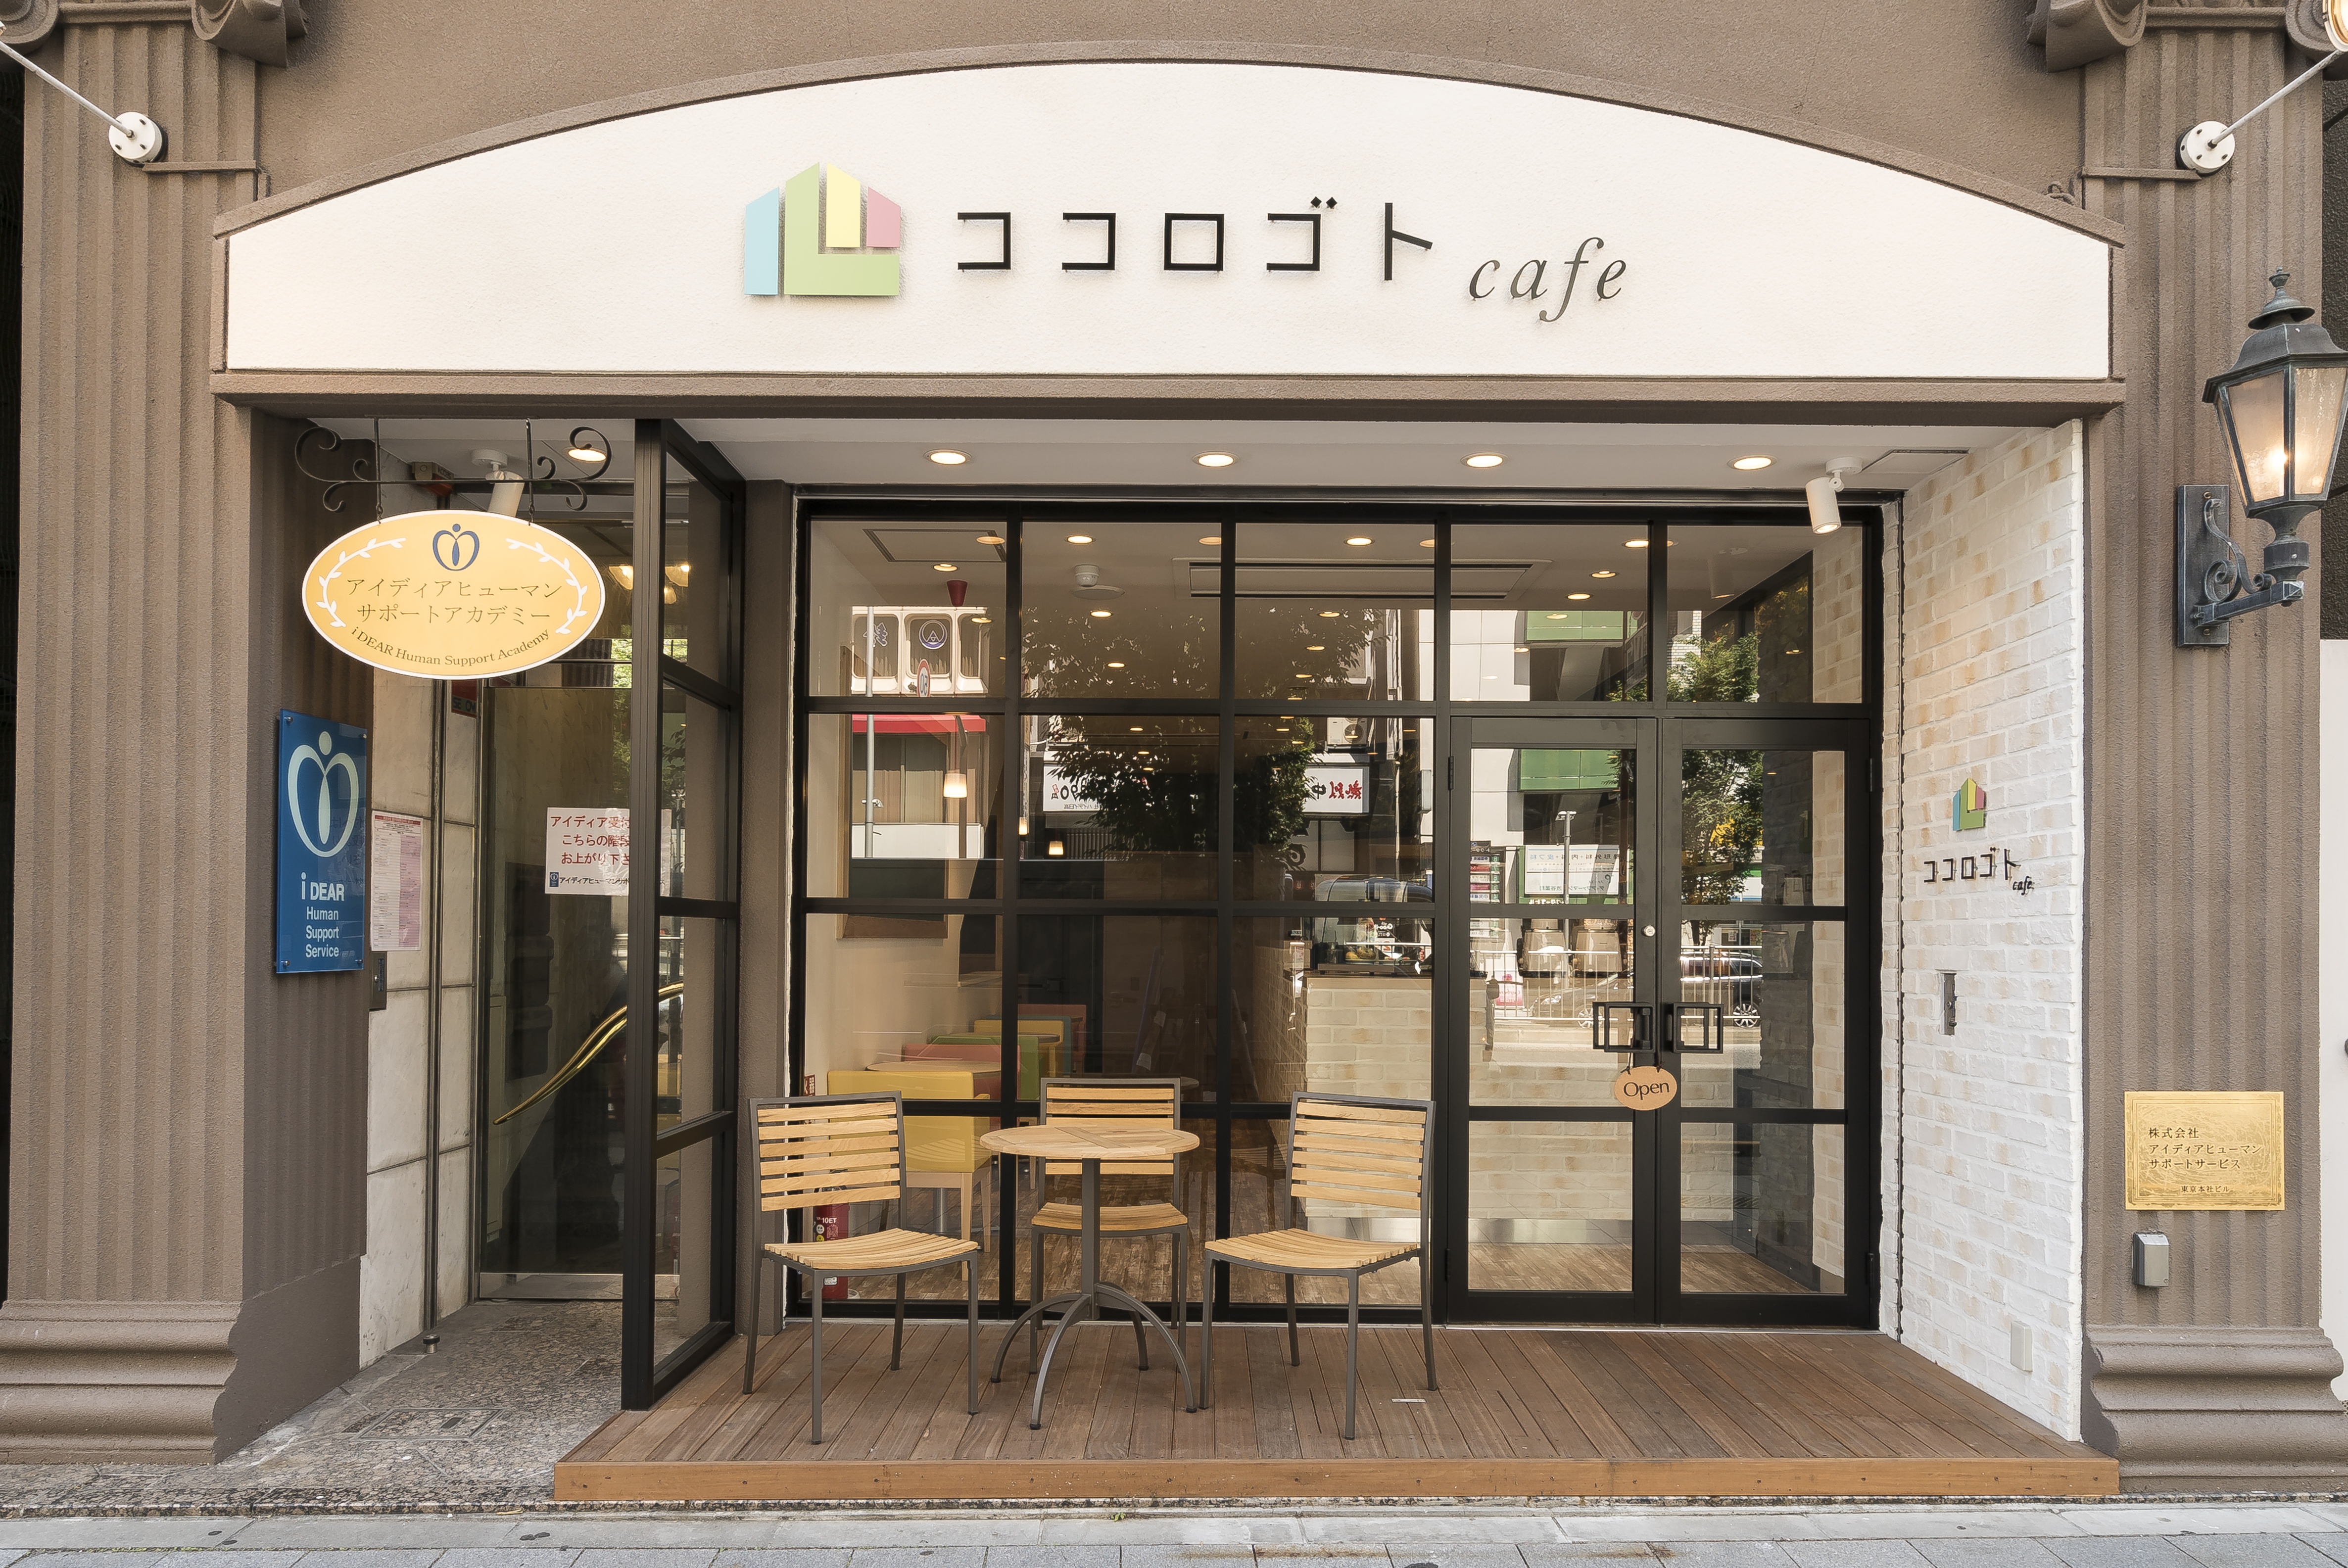 6月12日 全国初 心理カウンセラーがつくったカフェ ココロゴトカフェ が東京 渋谷にリニューアルオープン ココロにもごちそうを 株式会社アイディア ヒューマンサポートサービスのプレスリリース